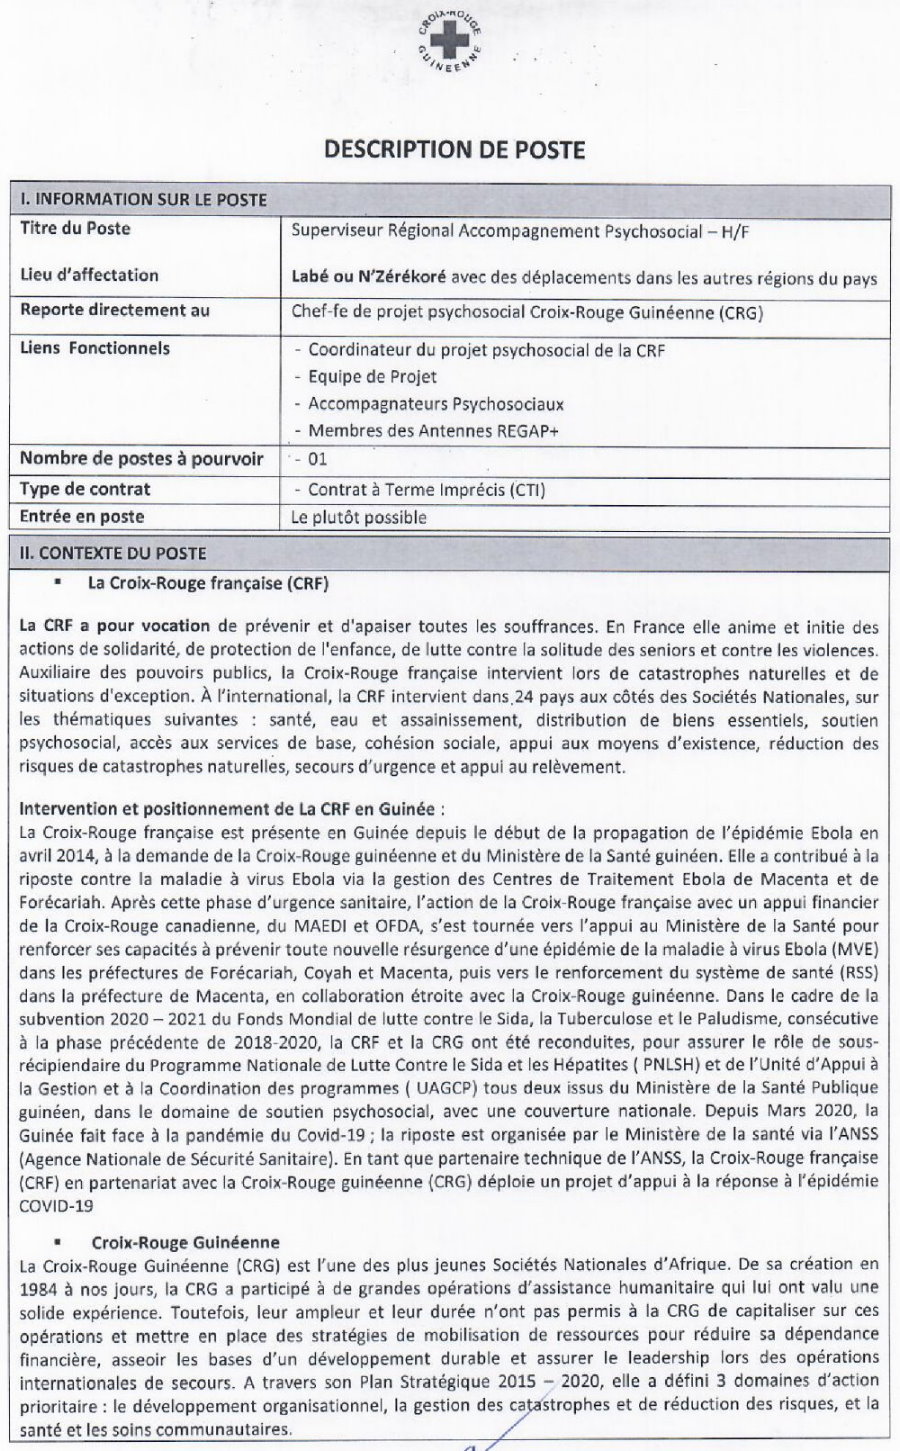 Recrutement d'Un Supérviseur Régional Accompagnement Psychosocial Croix Rouge guinéenne p1